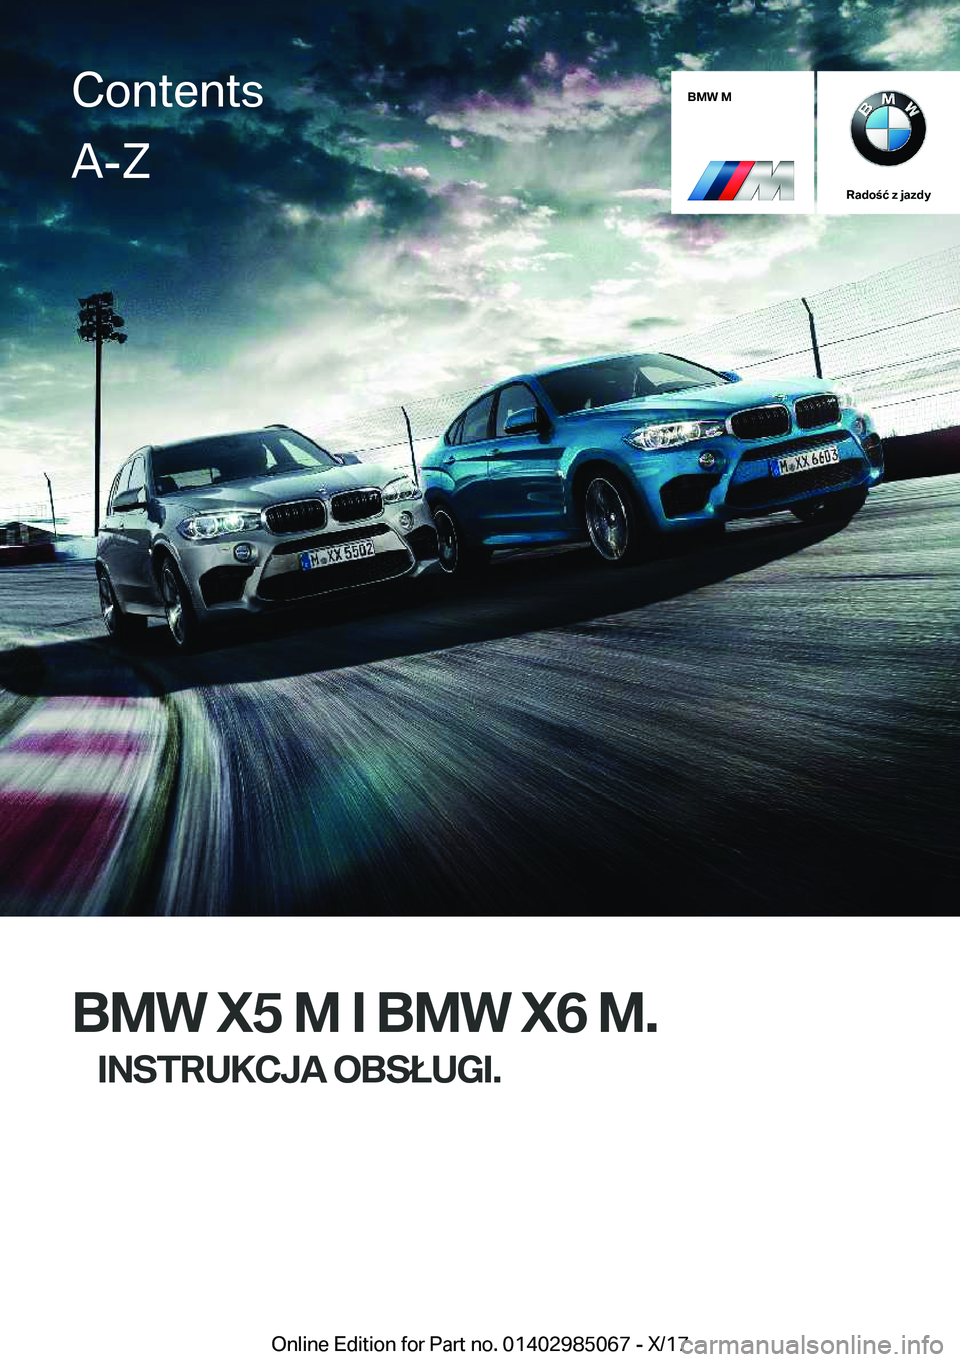 BMW X6 M 2018  Instrukcja obsługi (in Polish) �B�M�W��M
�R�a�d�o�